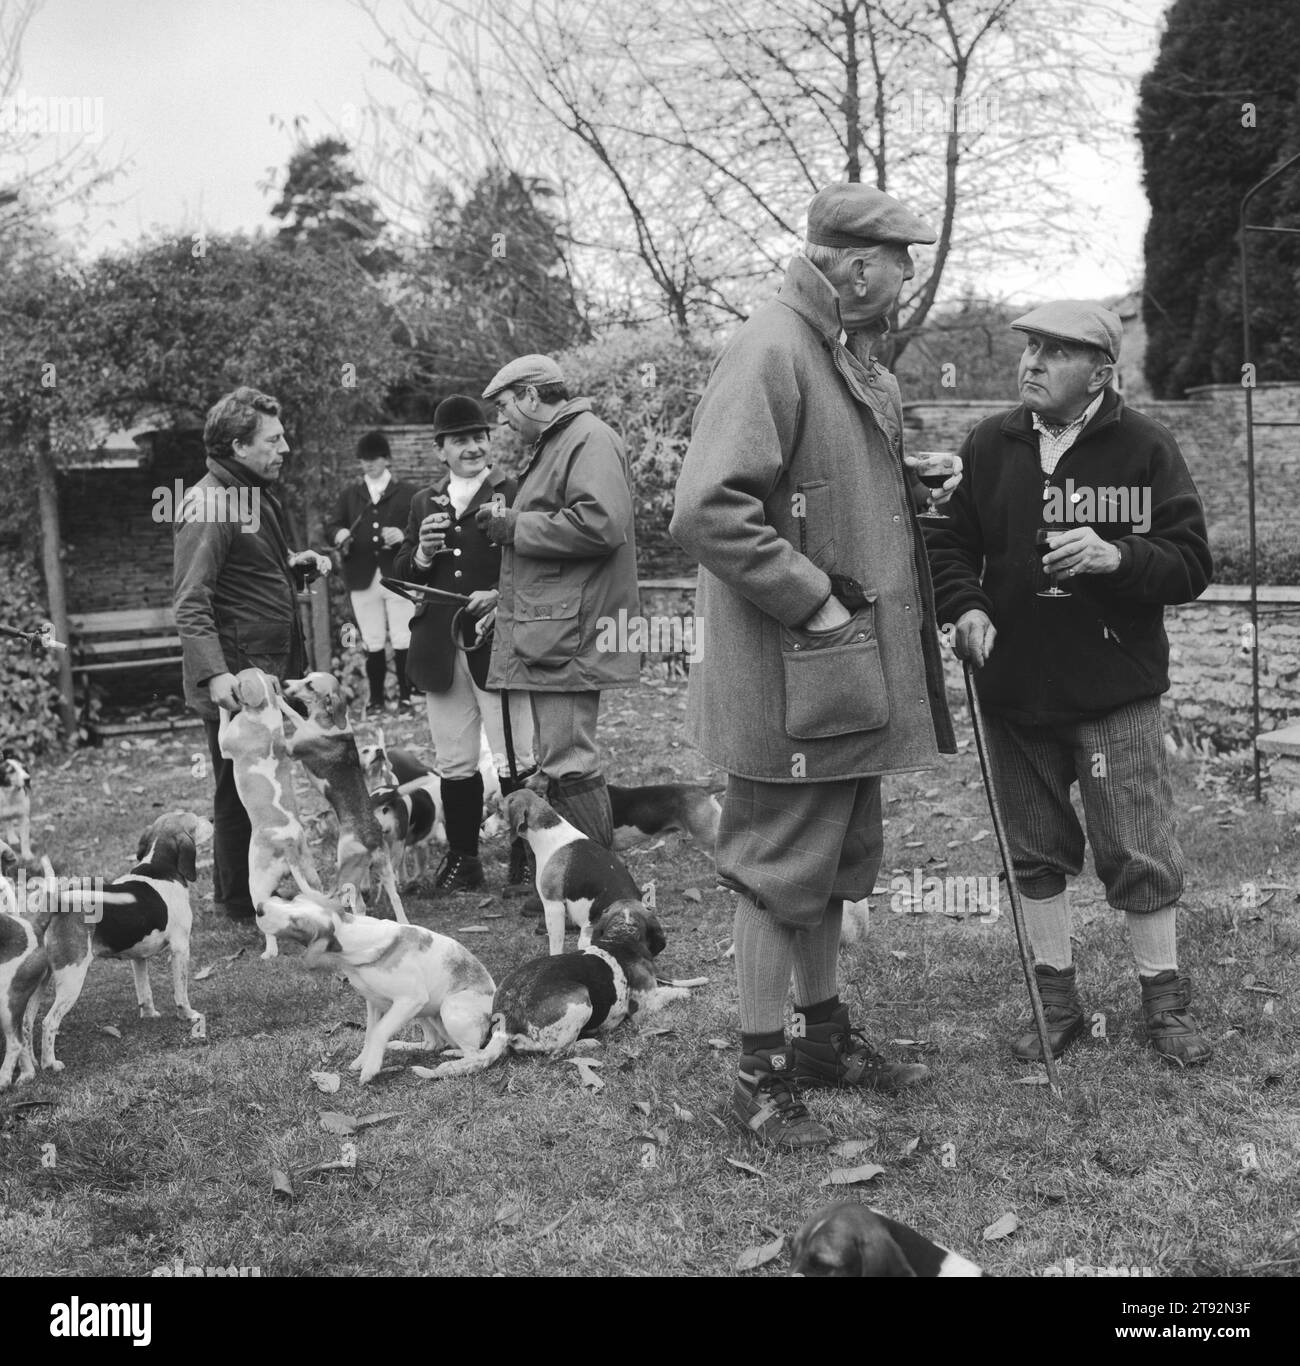 Beagling, The Dummer Beagles a Lawn Meet at Manor Farm, Icomb è un'occasione molto mondana con l'ospite che offre un ampio rinfresco. Gloucestershire, Inghilterra 2002 2000s UK HOMER SYKES Foto Stock